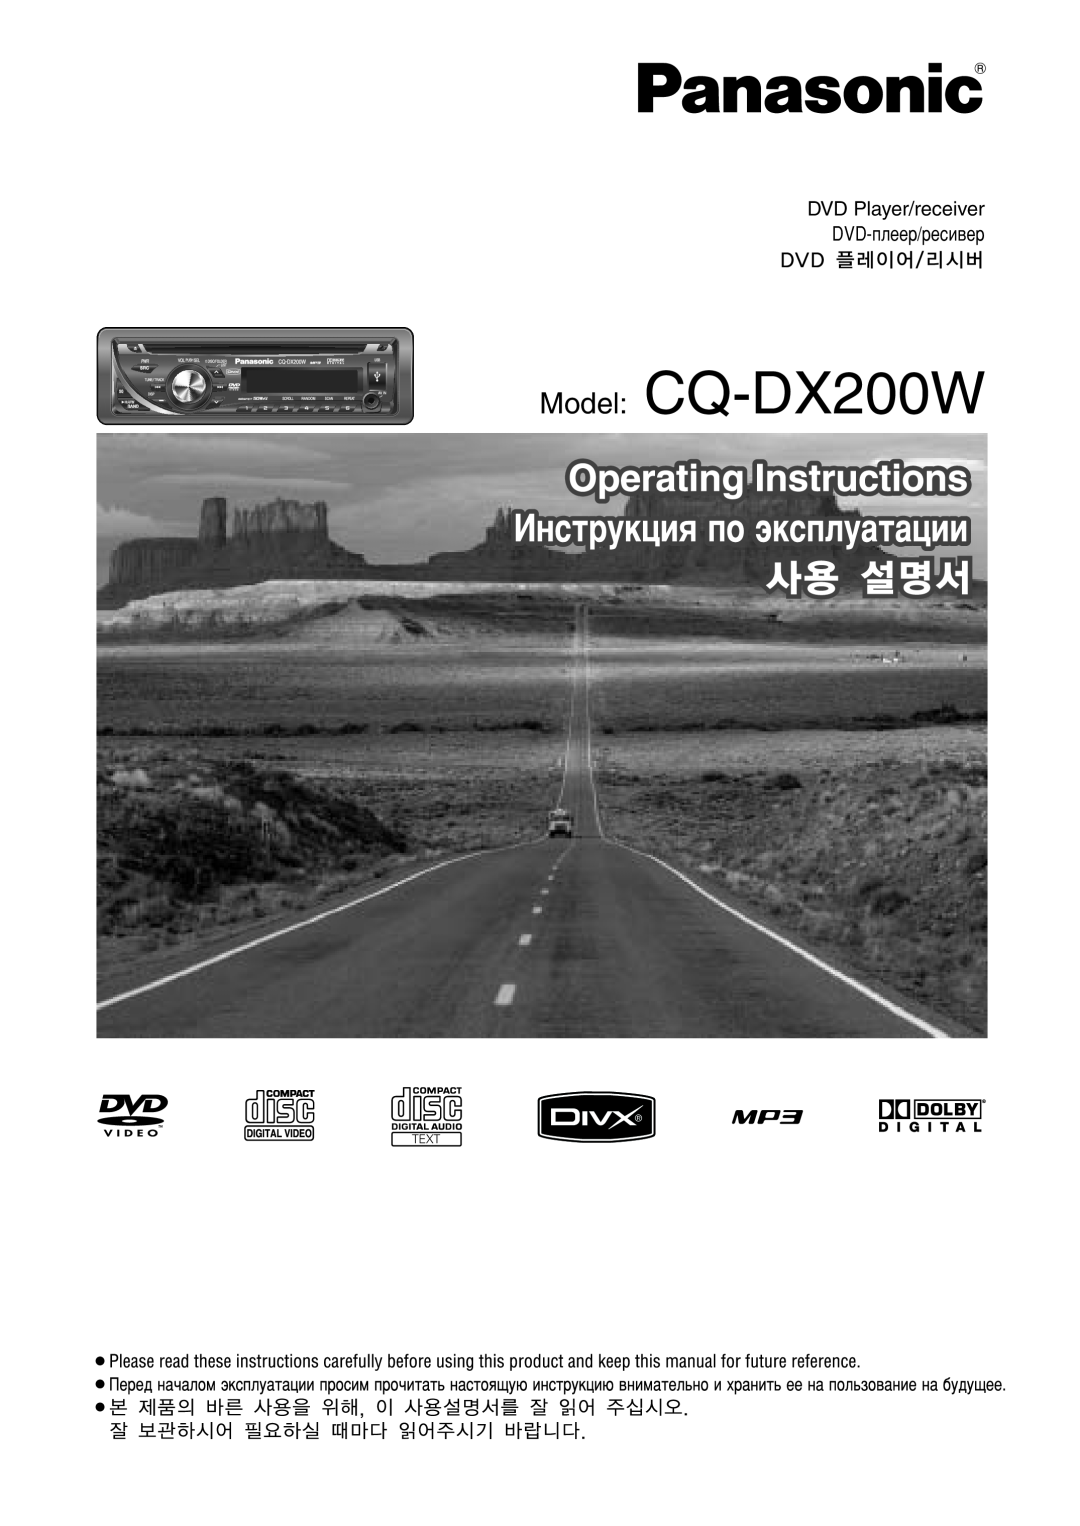 Panasonic manual Model CQ-DX200W, DVD Player/receiver, Dvd-Ôîââ/Âòë‚Â Dvd 플레이어/리시버, Text 